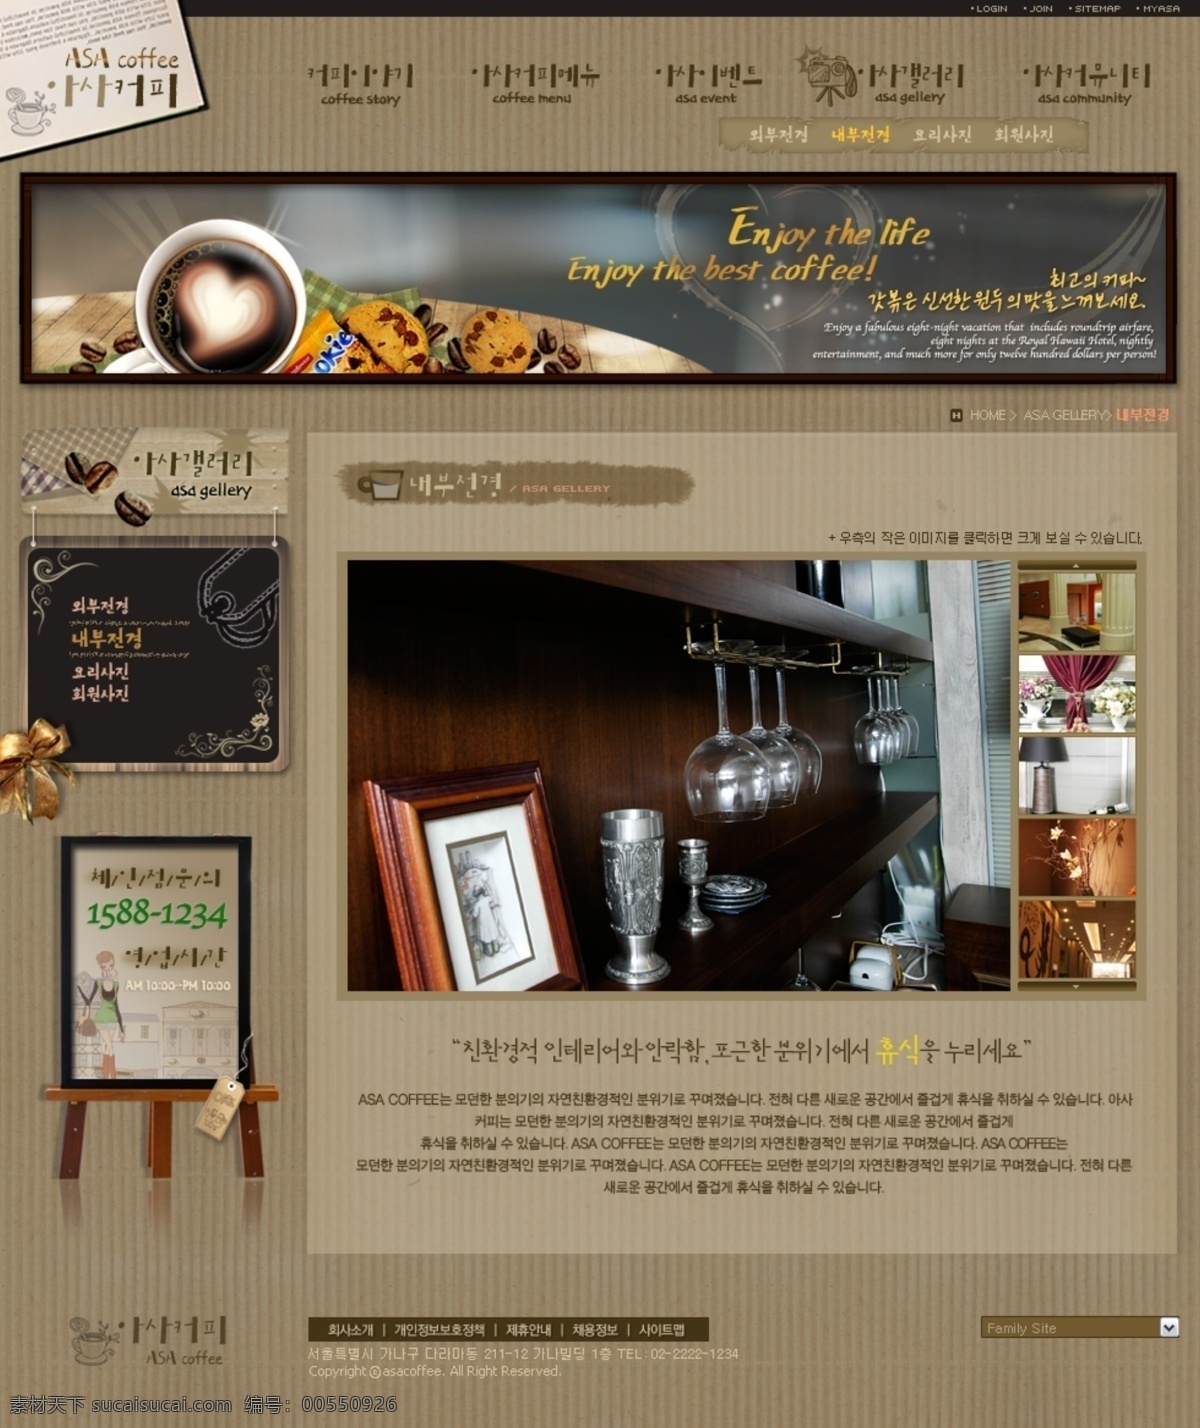 醇酒 香 咖啡 网页 模板 网站 网页设计 网页模板 网页素材